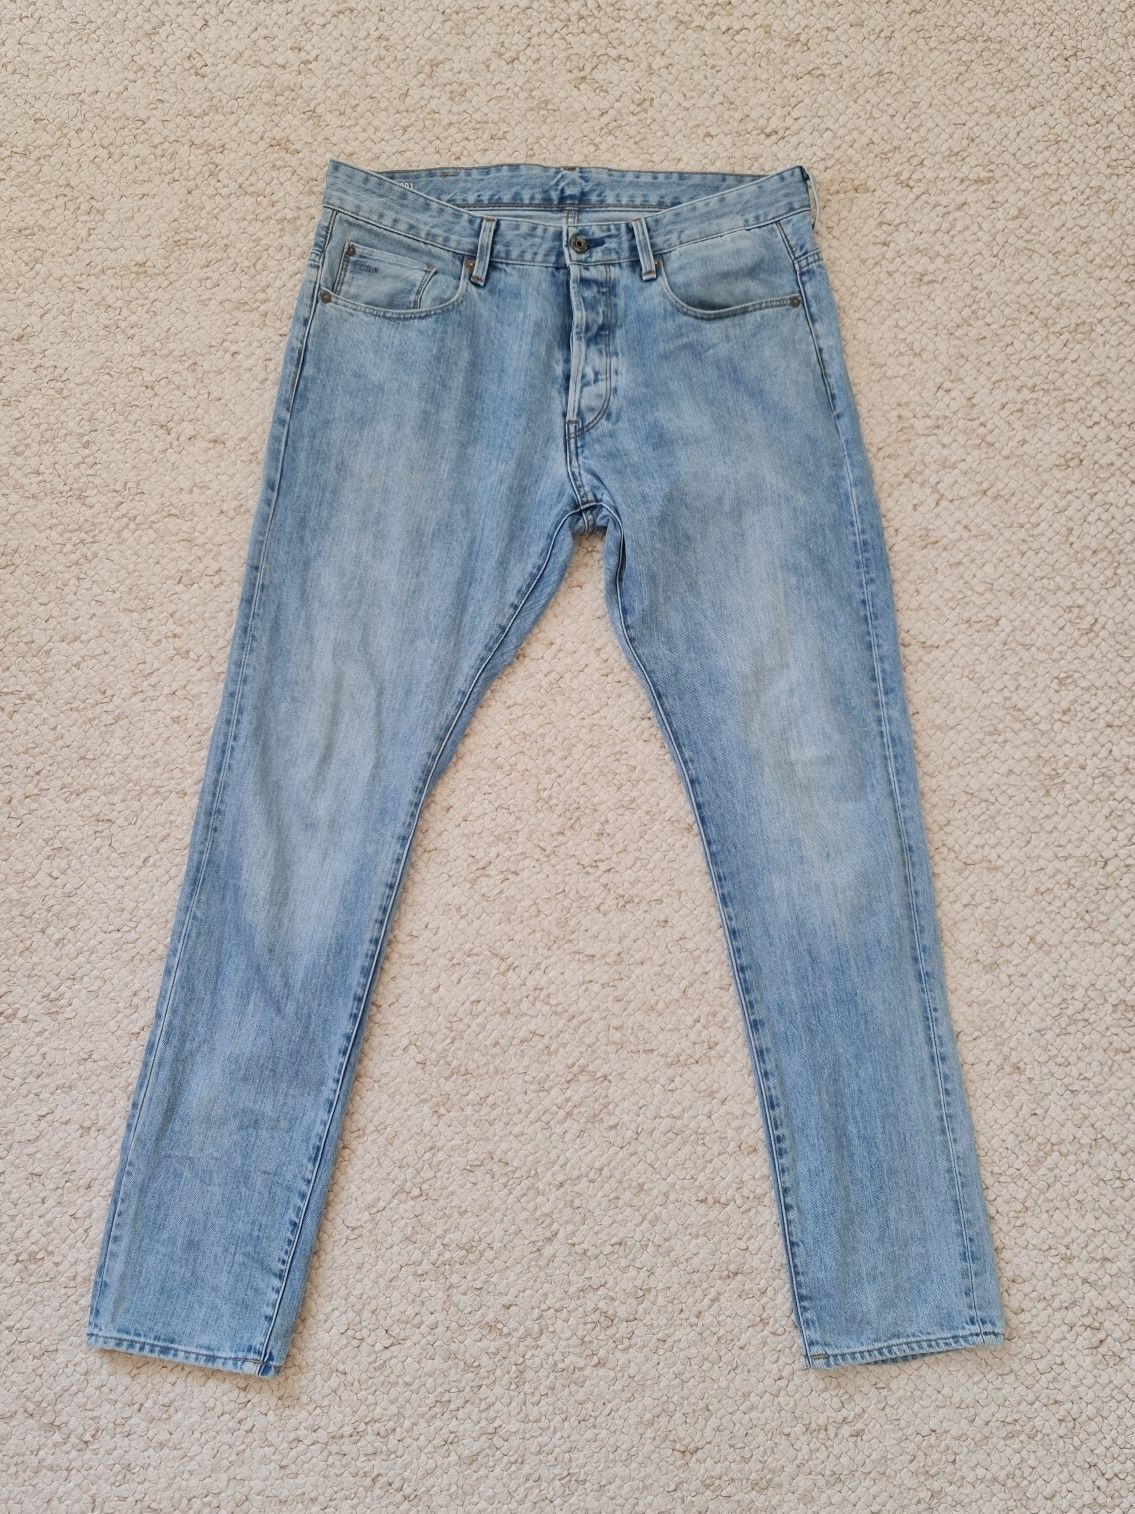 Spodnie G-Star RAW W34 L32 slim, jeansy, dżinsy, jasnoniebieskie